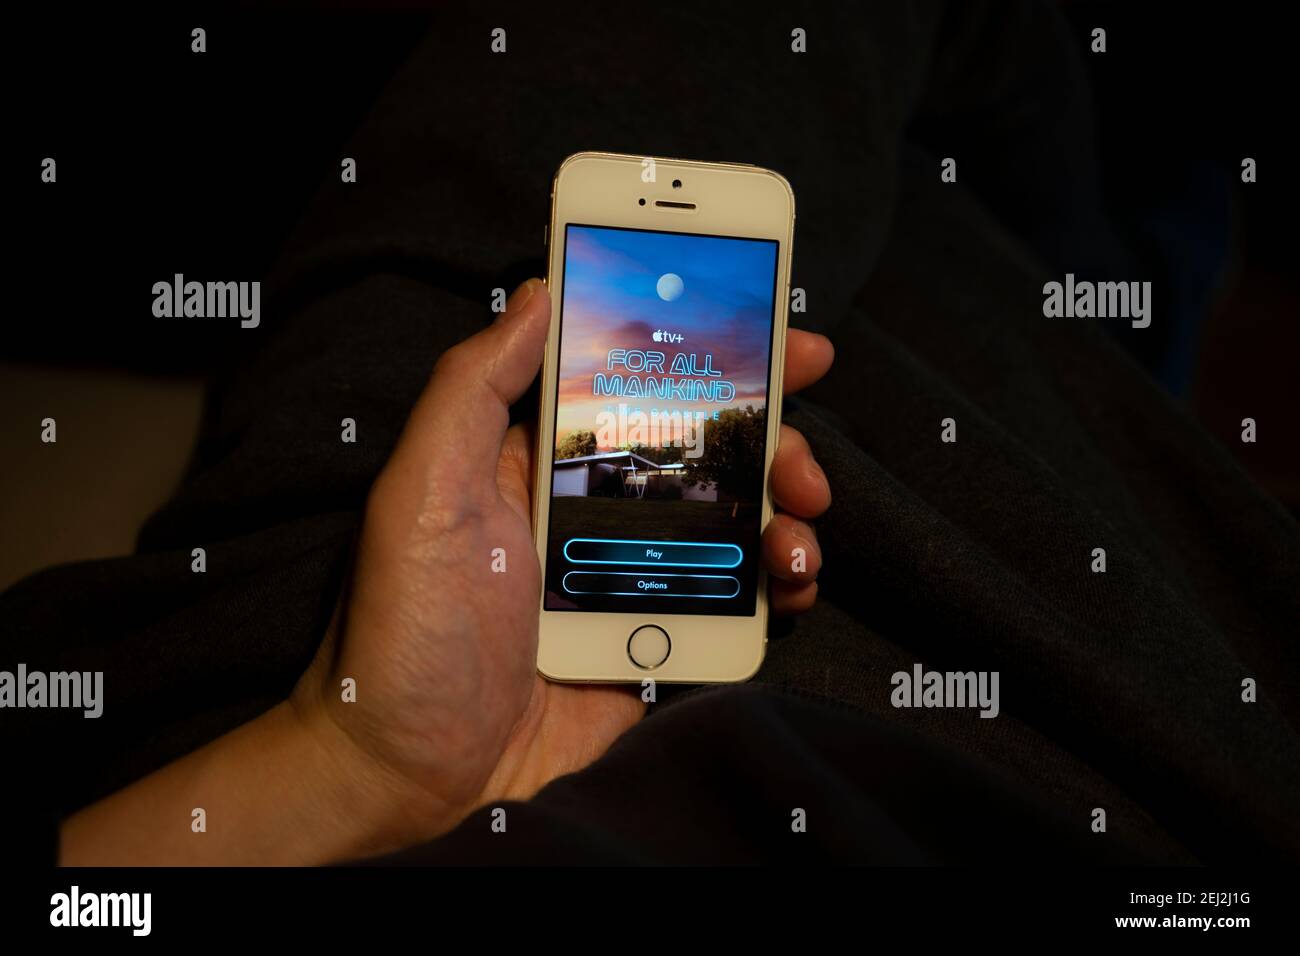 Un uomo gioca il nuovo gioco di realtà aumentata "for All Humanity: Time Capsule" sul suo iPhone. L'esperienza AR si basa sul dramma spaziale Apple TV+. Foto Stock